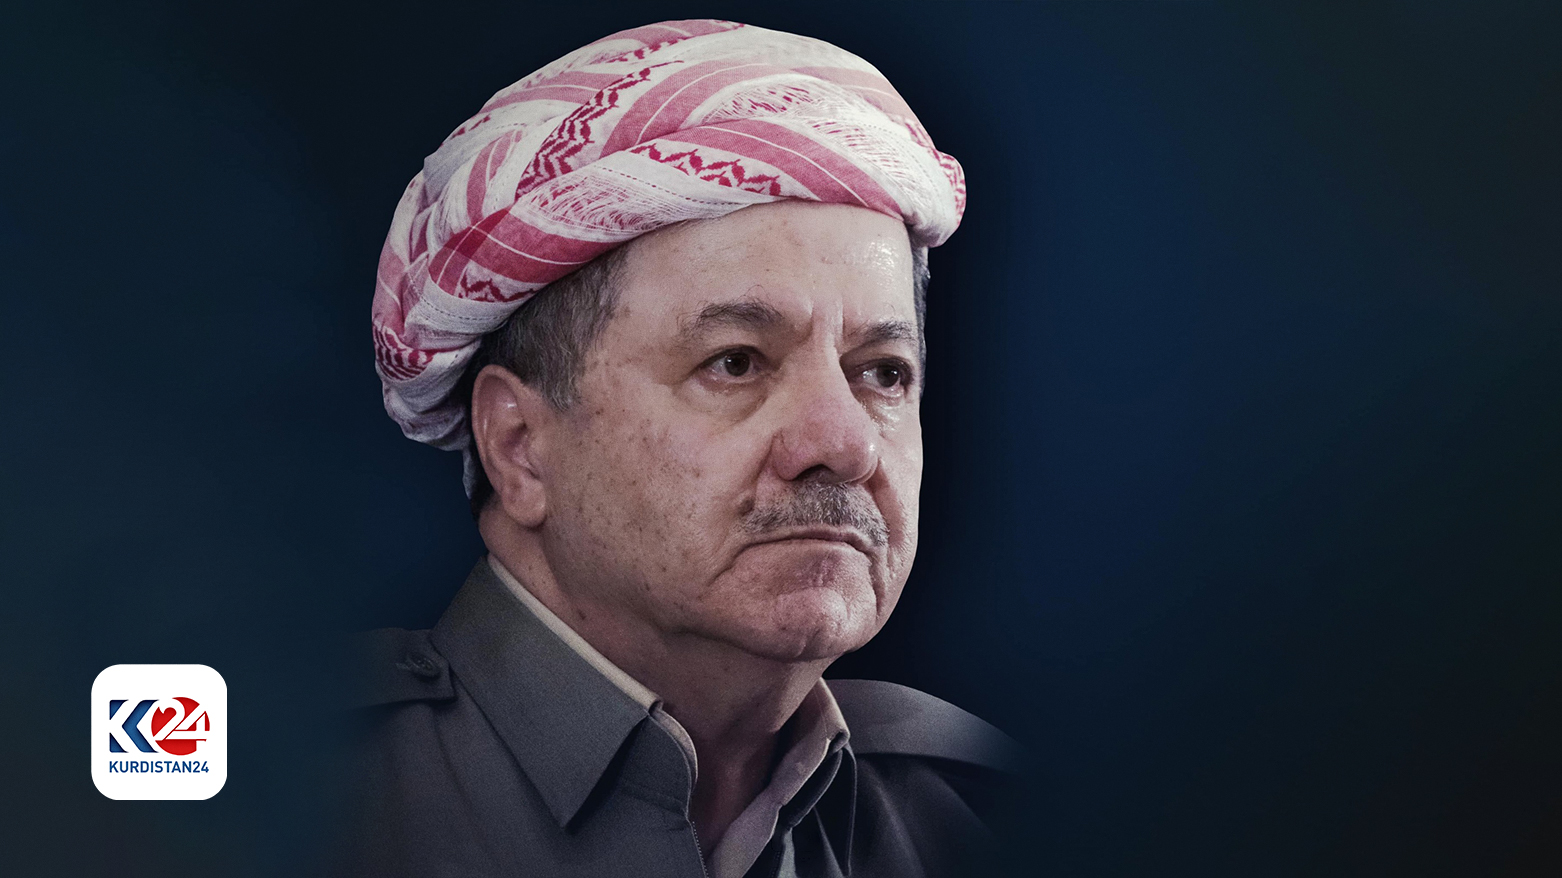 Kurdistan Region is a window into understanding the whole region says US professor